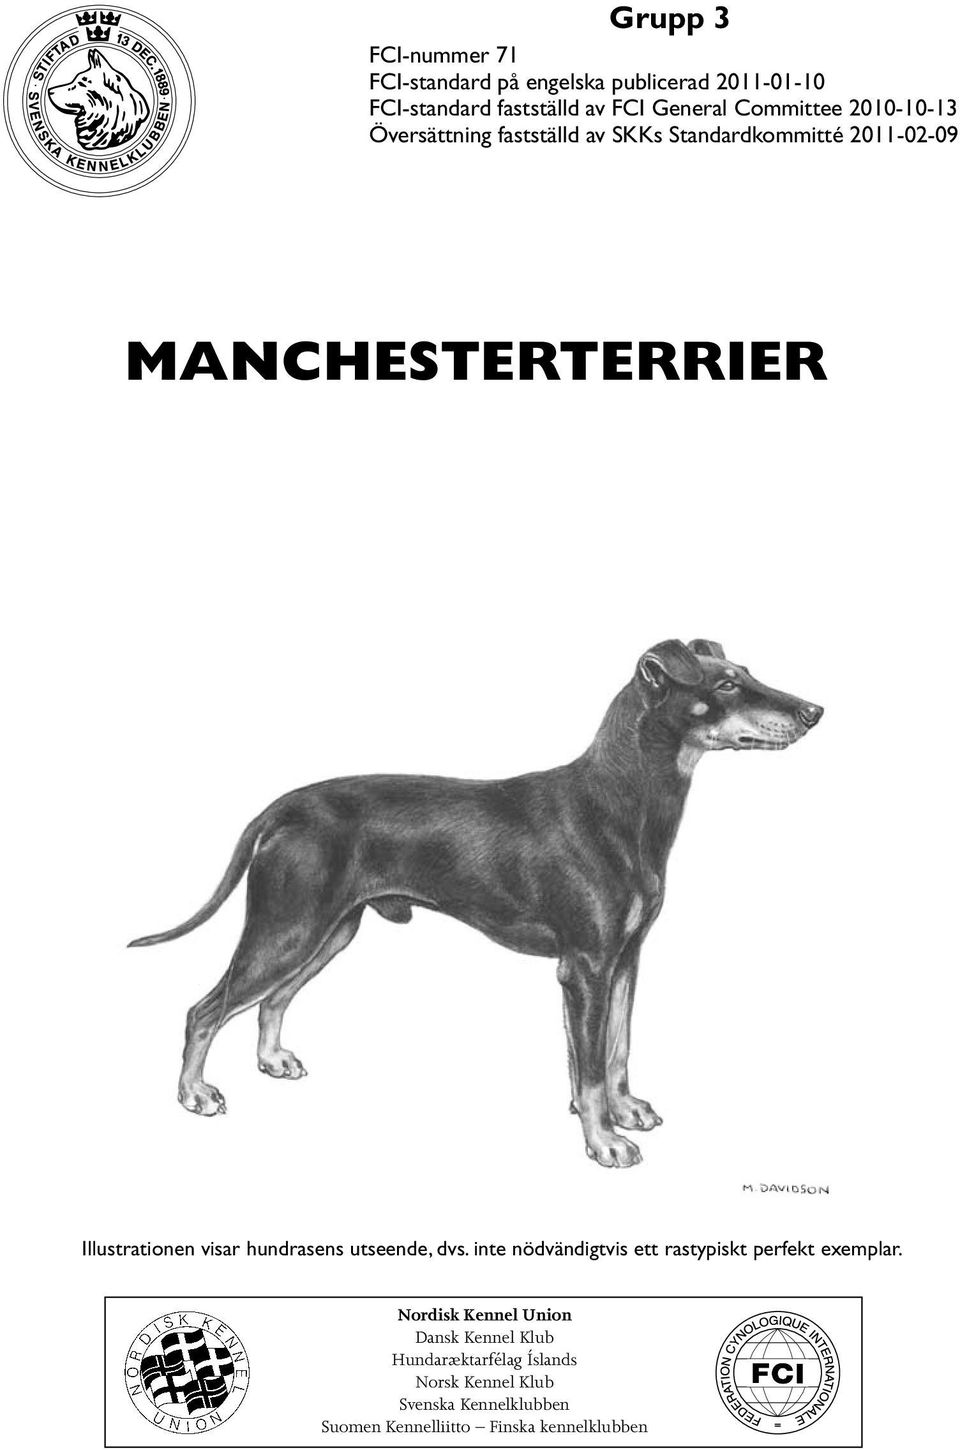 Illustrationen visar hundrasens utseende, dvs. inte nödvändigtvis ett rastypiskt perfekt exemplar.